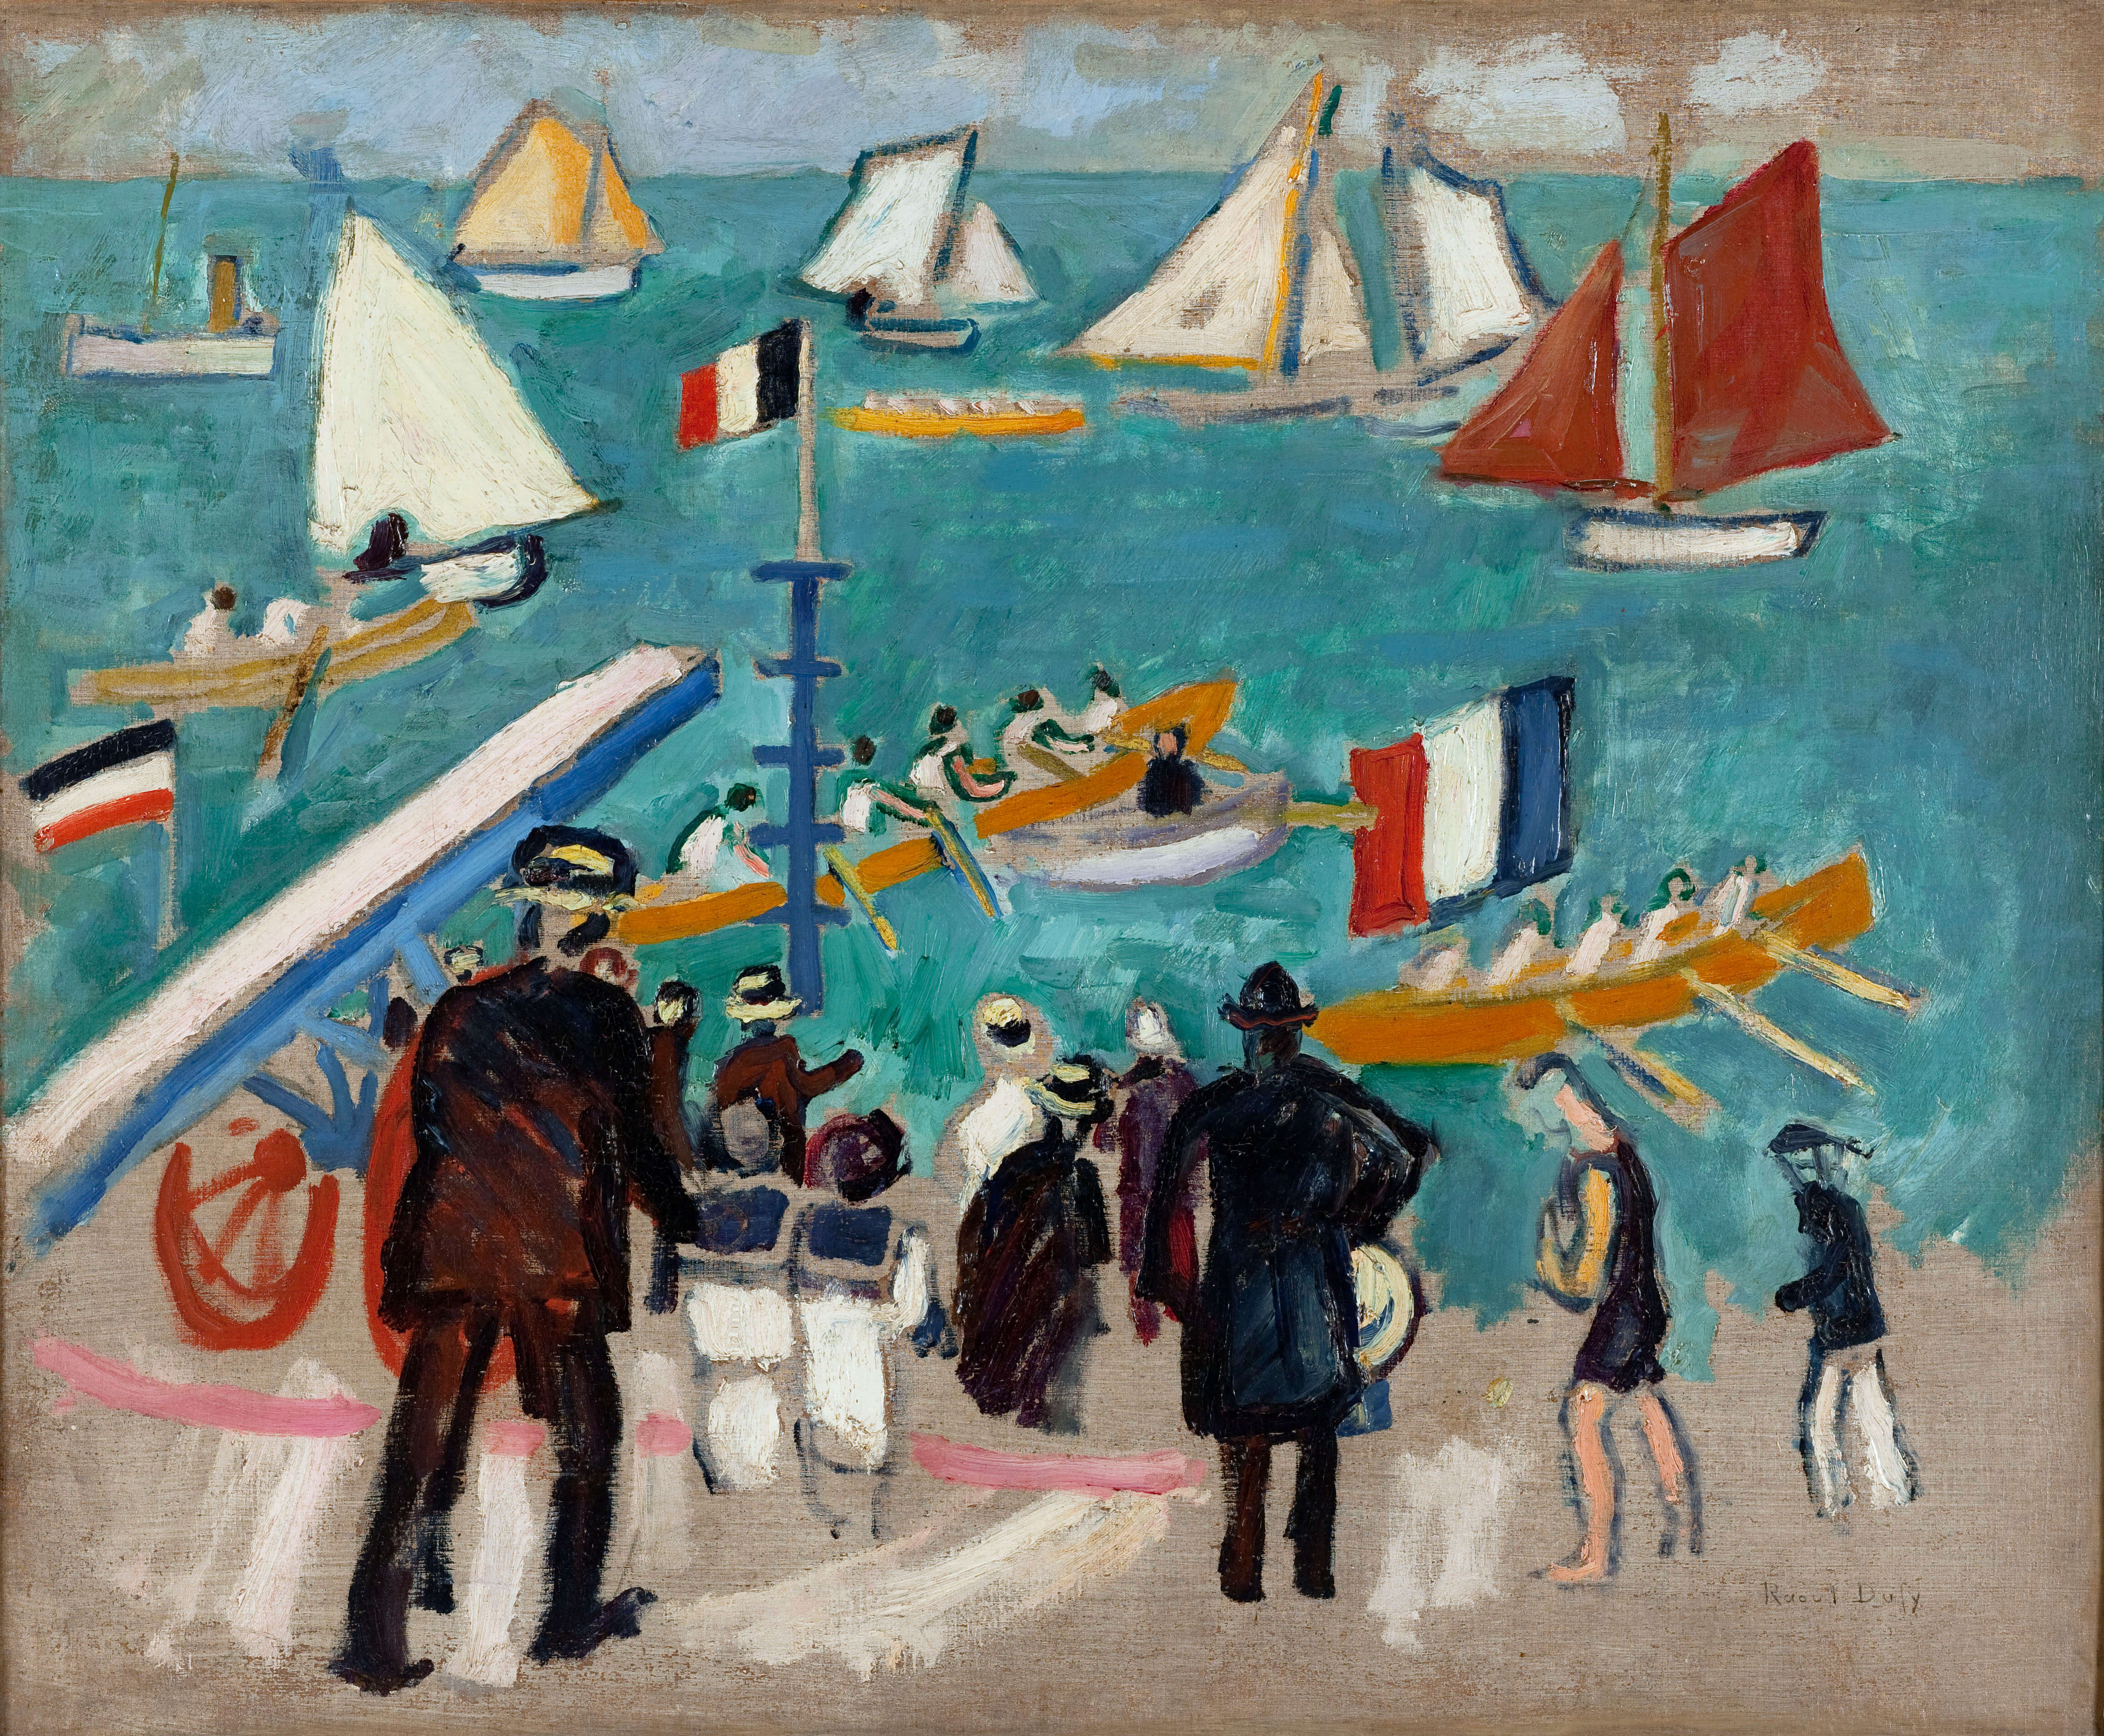 Exhibition "Raoul Dufy au Havre"